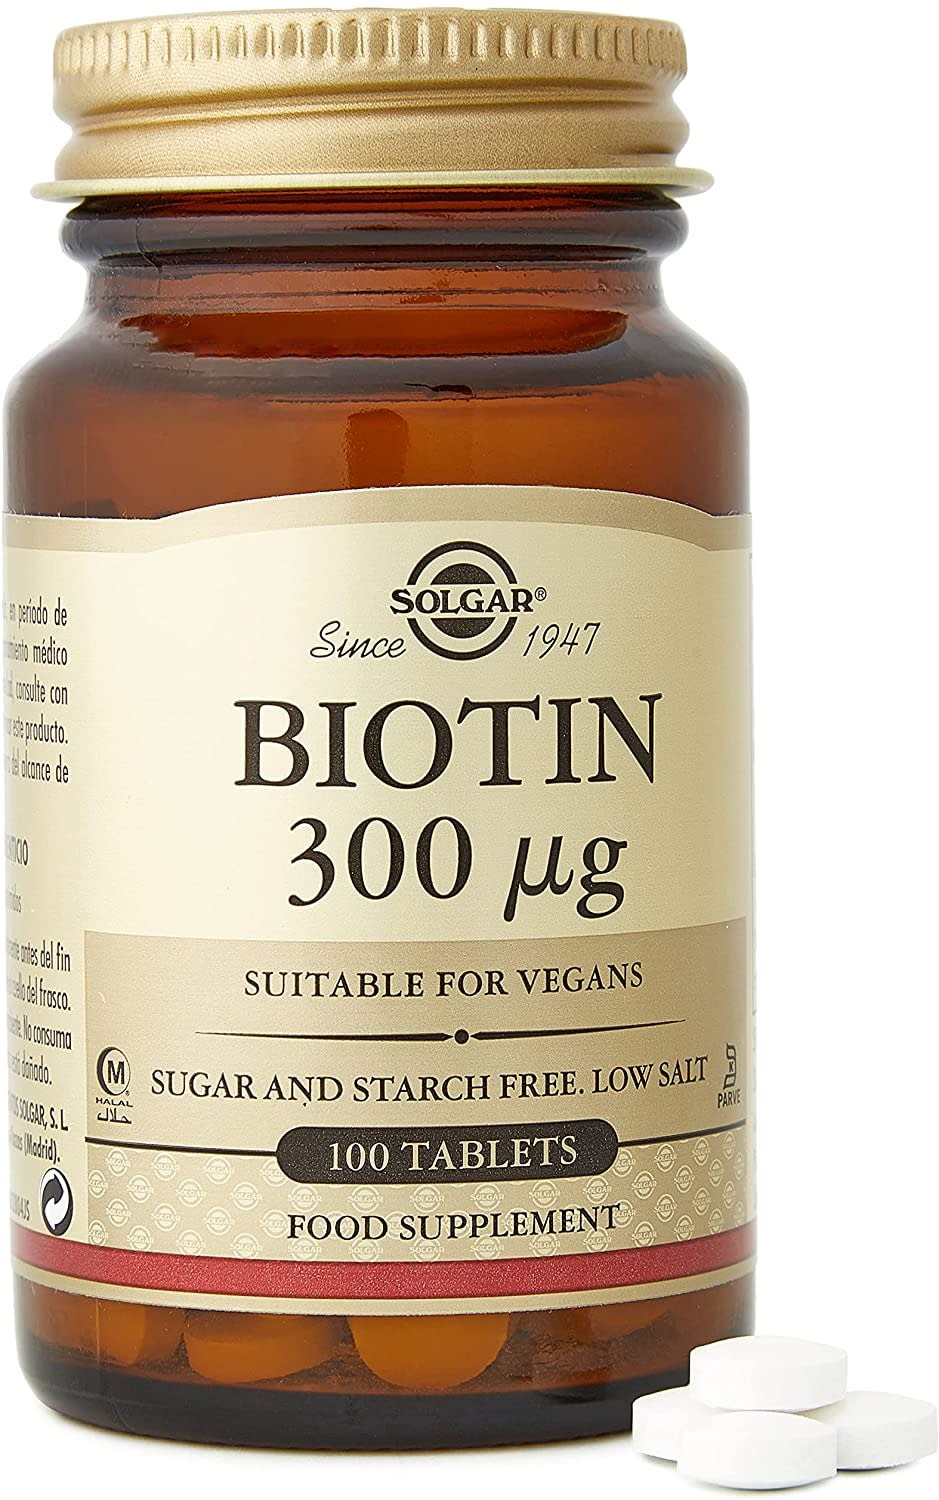 Solgar Biotin for hair loss